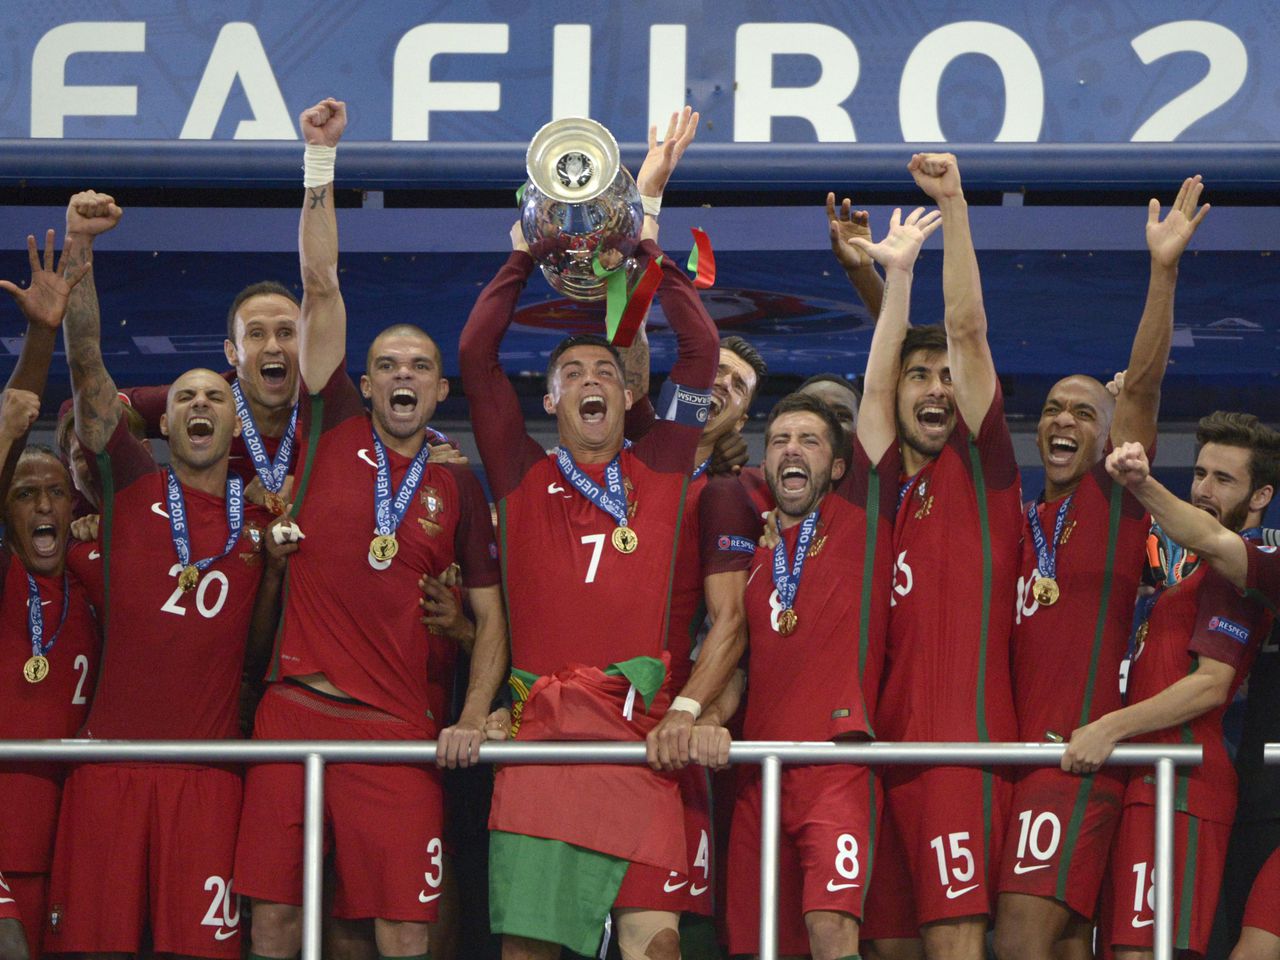 Manchester United anuncia chegada de Dalot, promessa portuguesa - Gazeta  Esportiva